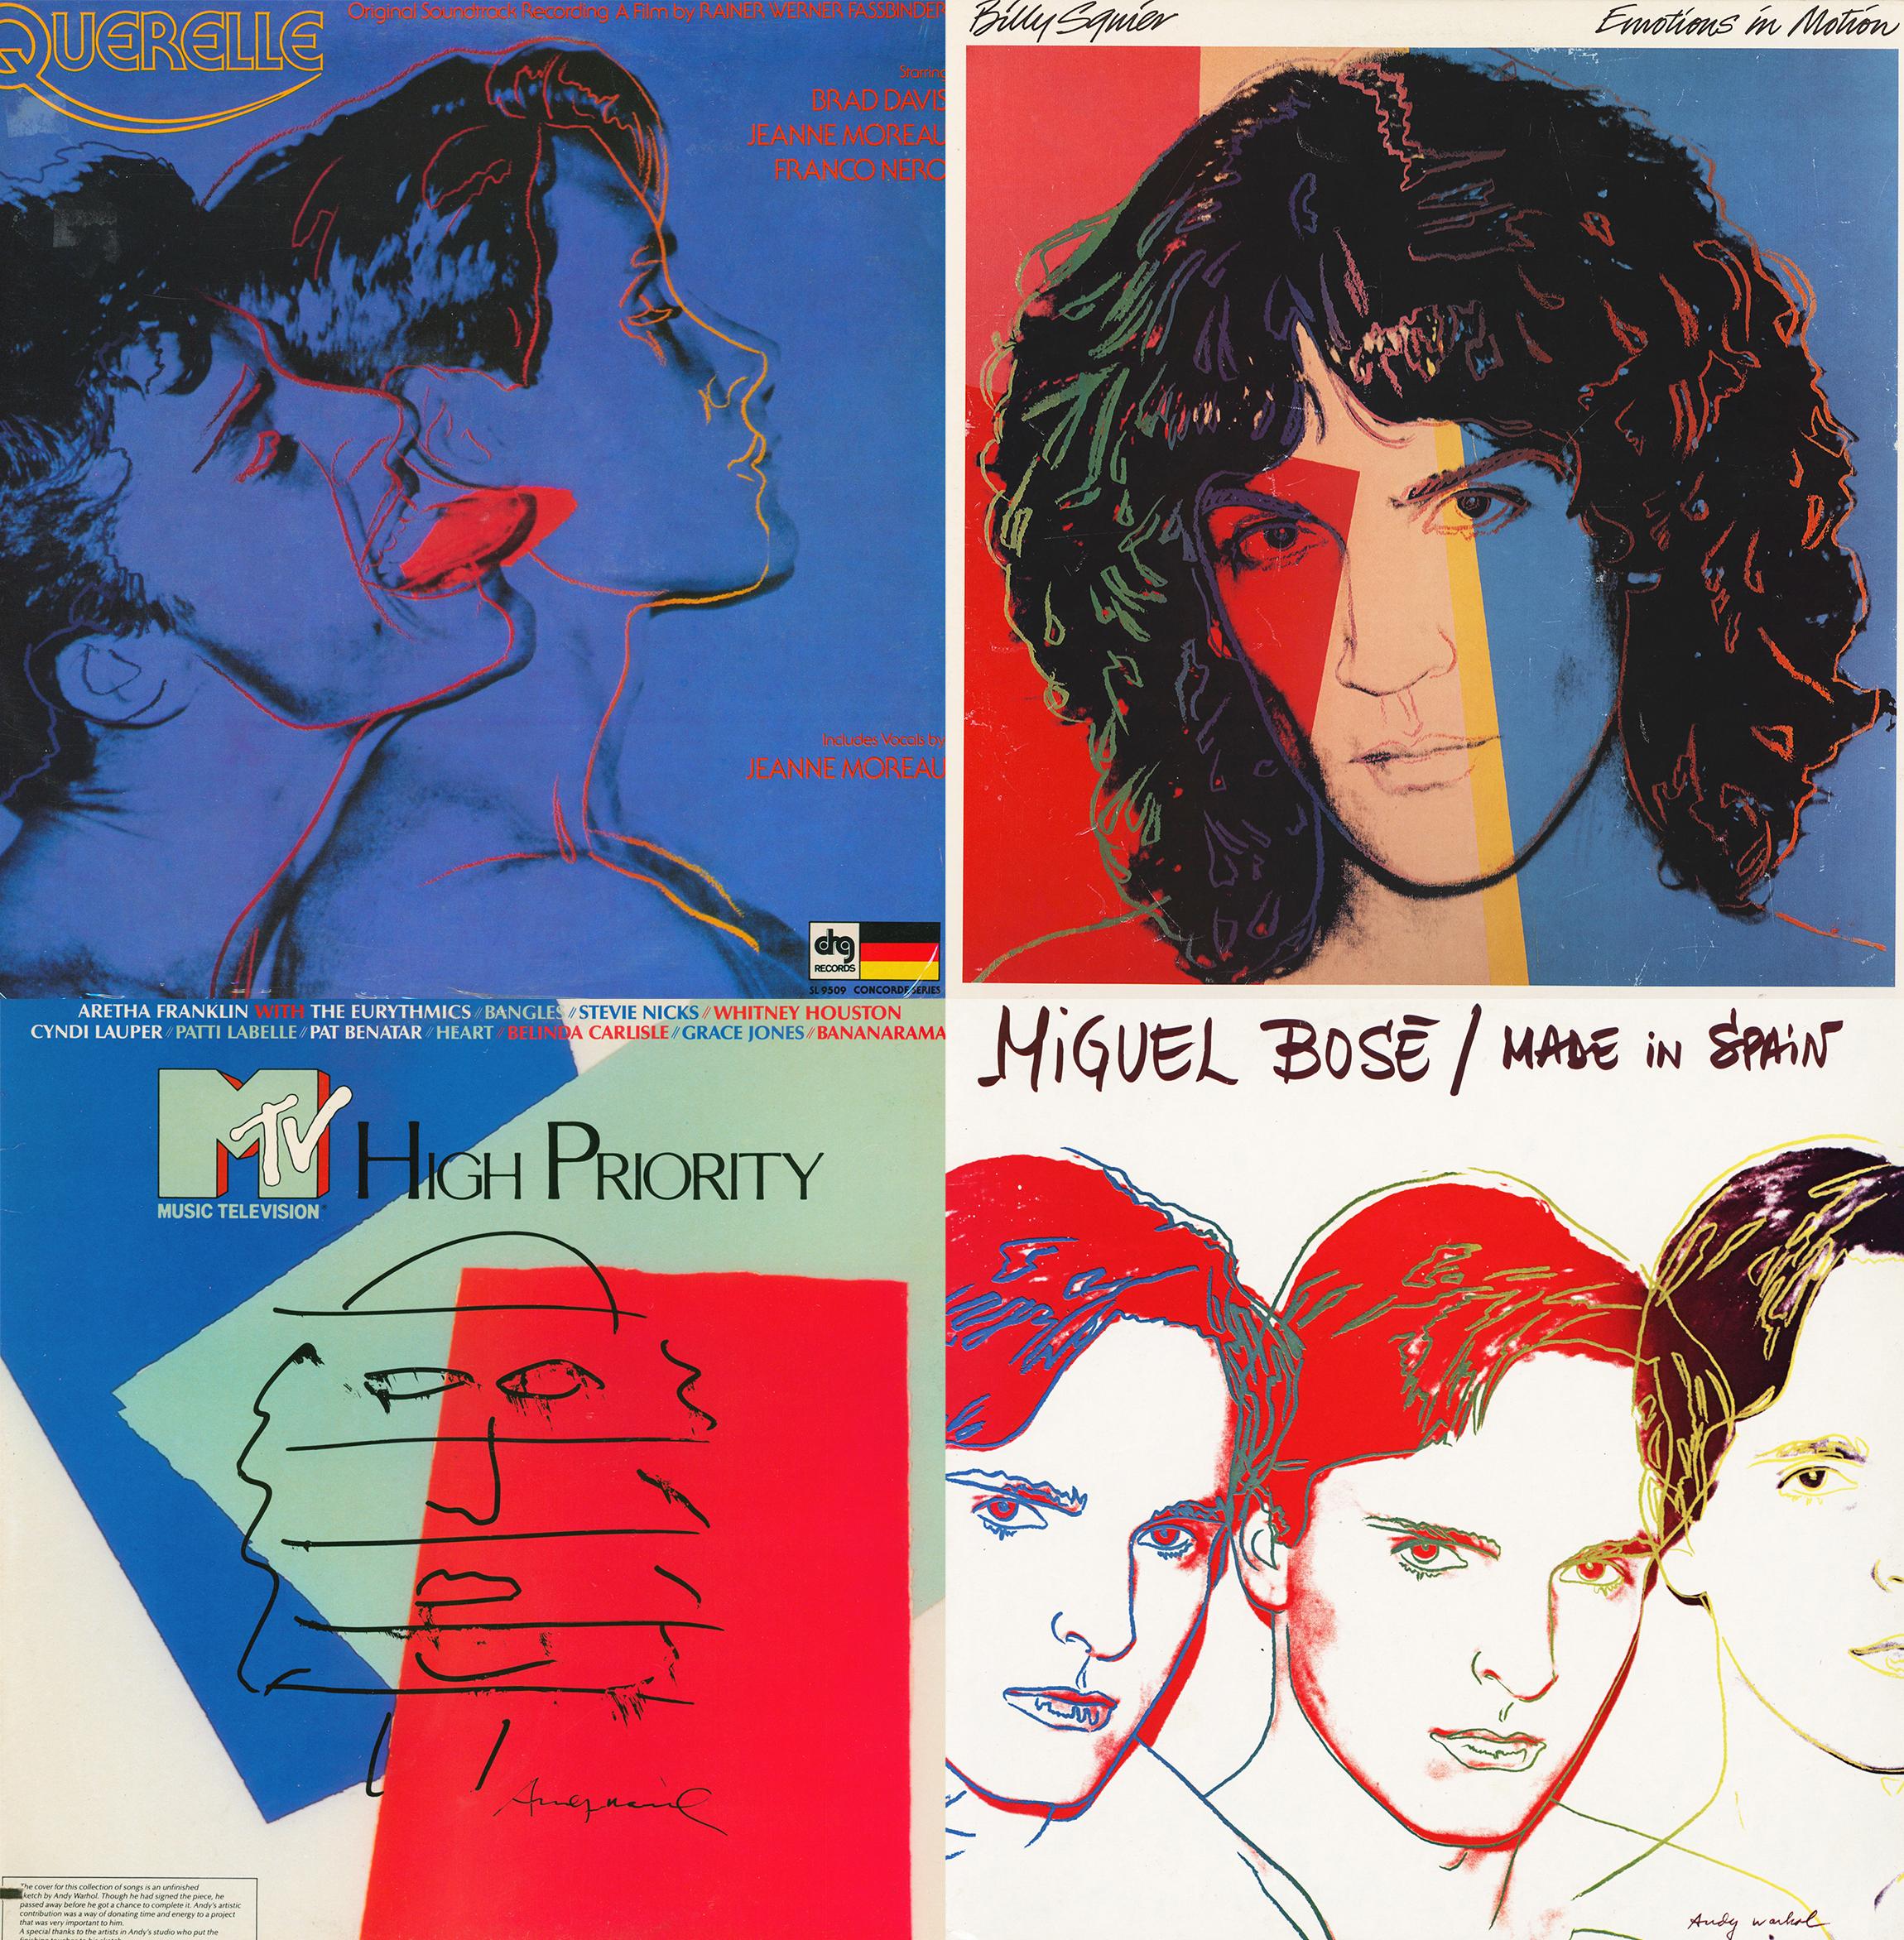 La pochette d'album d'Andy Warhol :
Collection de 4 LP dont les pochettes individuelles ont été conçues par Andy Warhol entre 1982 et 1987 :

12 x 12 pouces / 30.48 x 30.48 cm (s'applique à chaque individu).
Couvertures : L'état général des